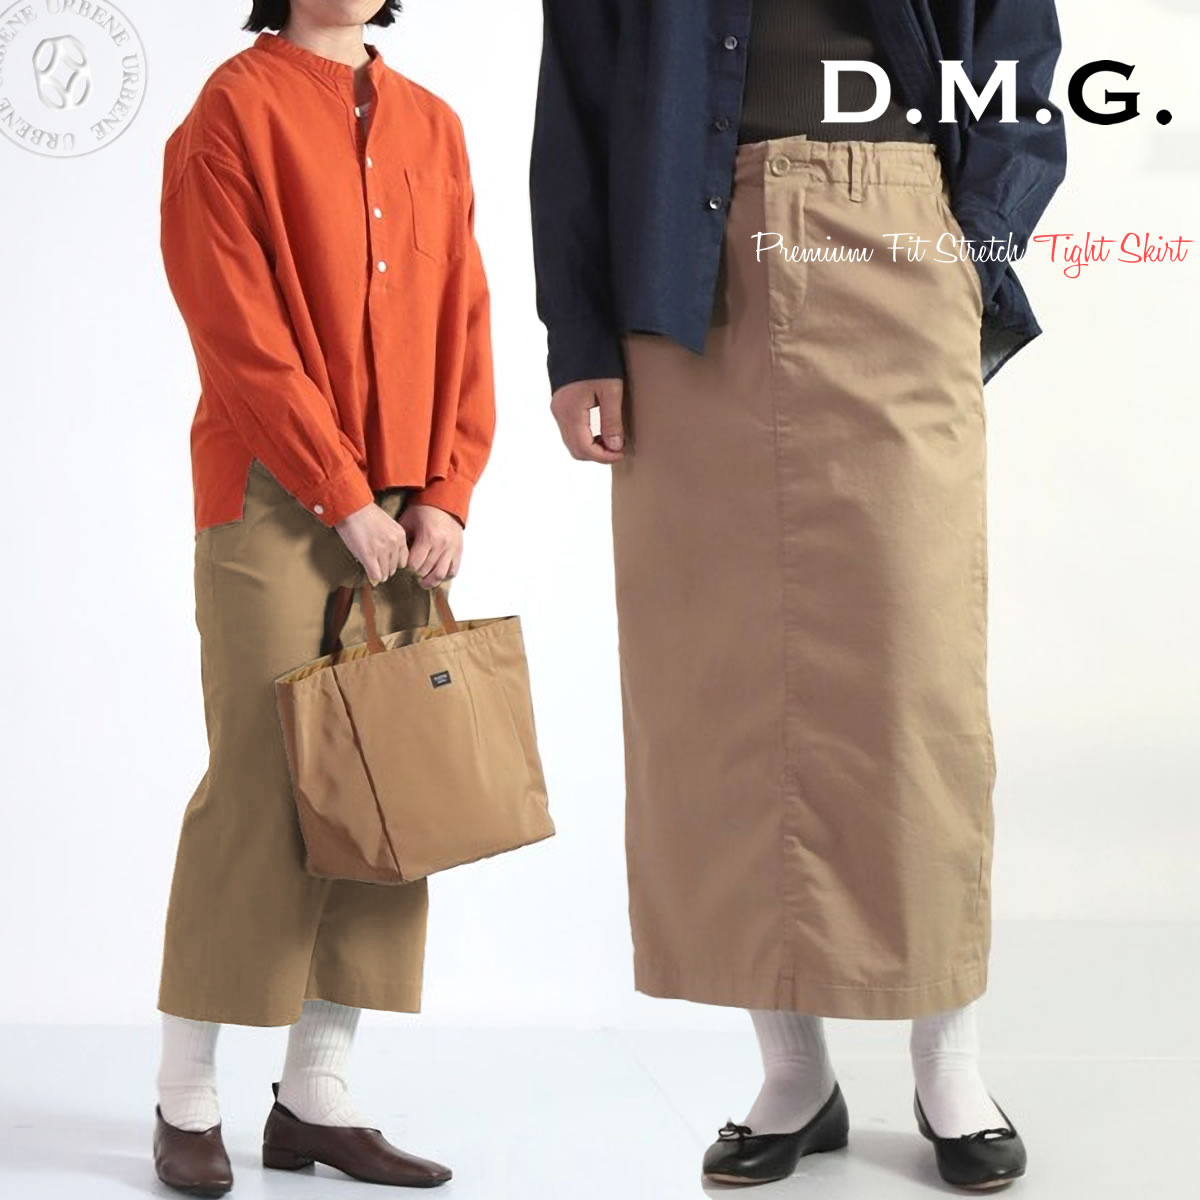 ドミンゴ スカート d.m.g ストレッチタイトスカート DMG プレミアムフィット 20sFTYス...